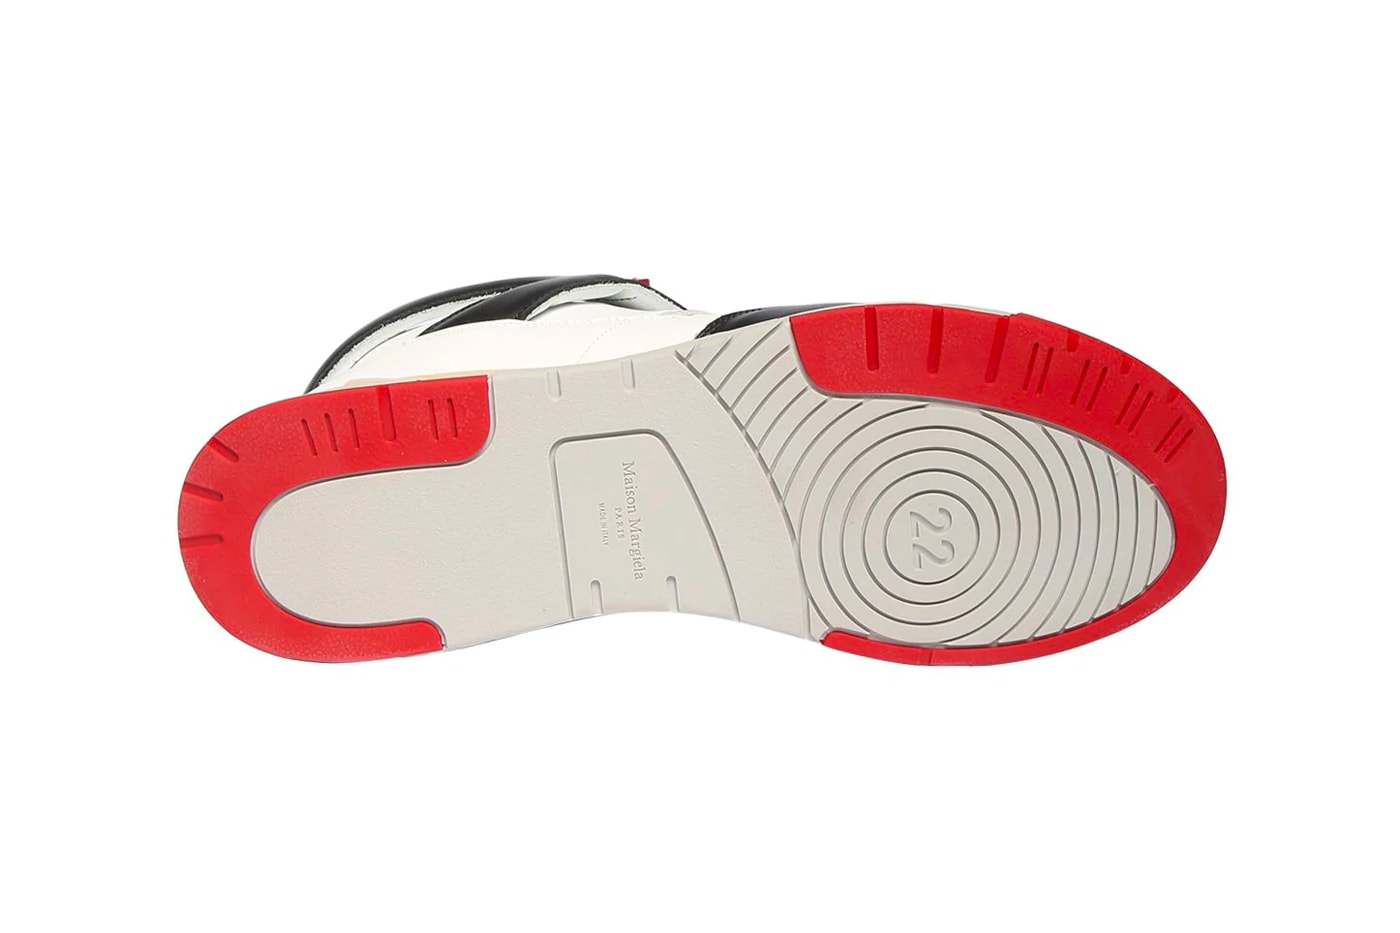 マルジェラからエアジョーダン4ぽいスニーカーが発売 Maison Margiela 35mm Deadstock Leather Mid-High Sneakers Release Info Buy Price LUISAVIAROMA Jordan Air Brand 4 fire red white black grey